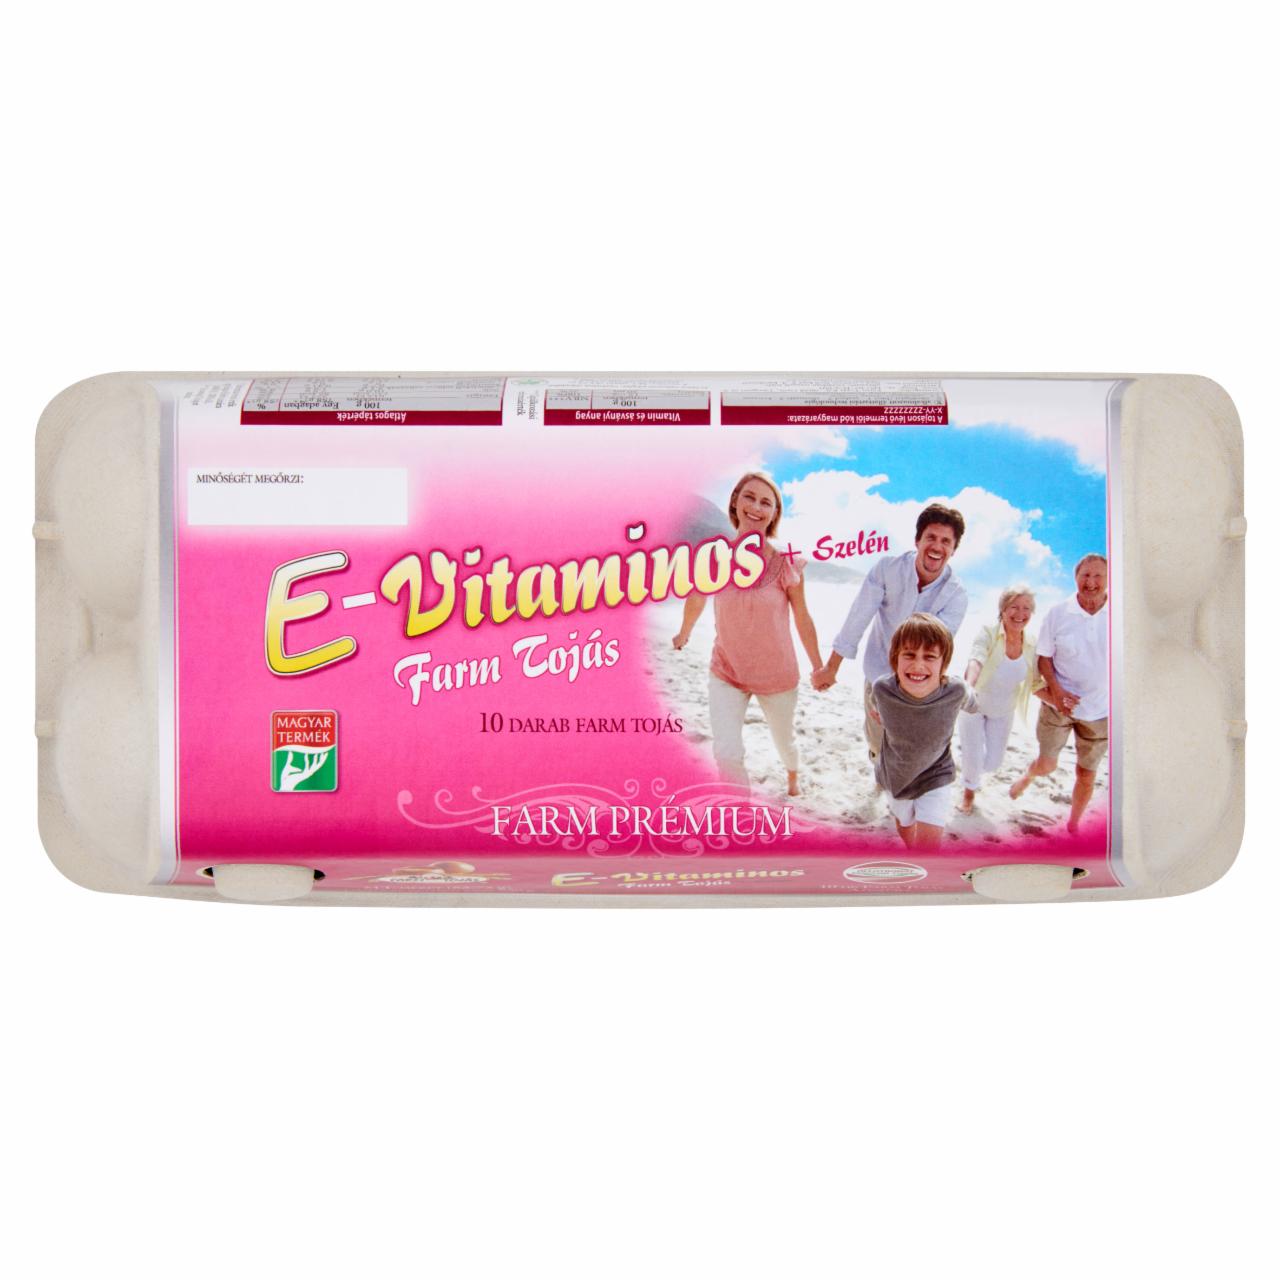 Képek - Farm Tojás Farm Prémium E-vitaminos + Szelén tojás L 10 db